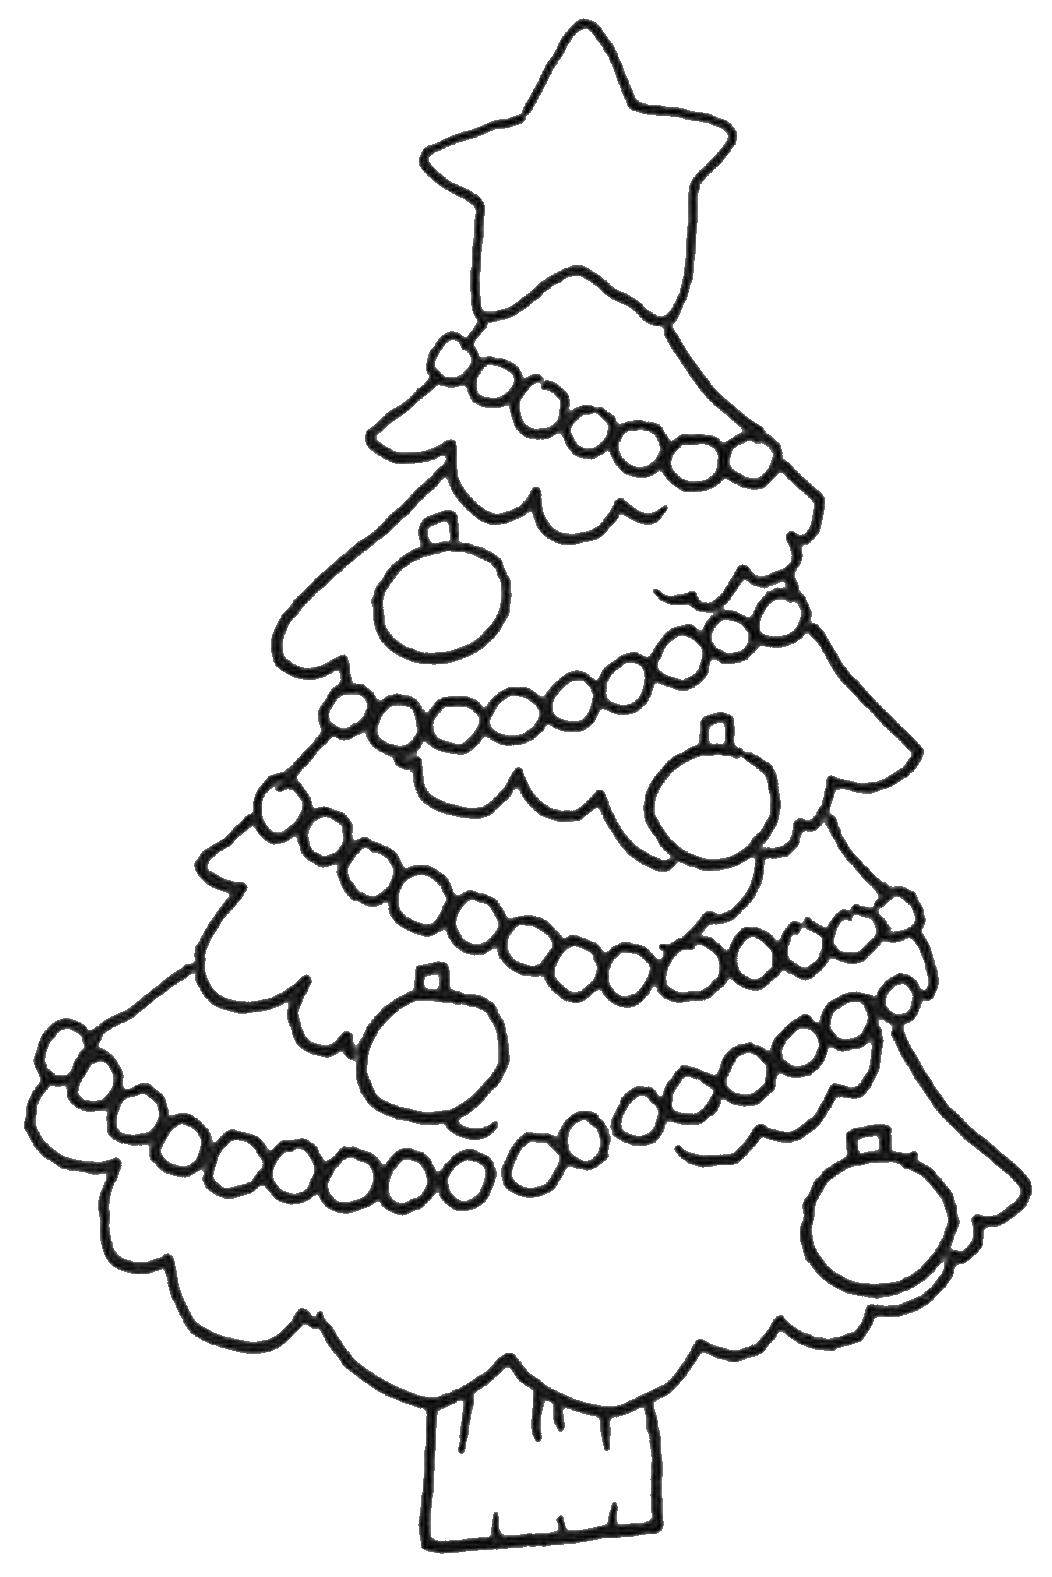 Название: Раскраска Наряженная ёлка. Категория: Рождество. Теги: елка, звезда, дерево.